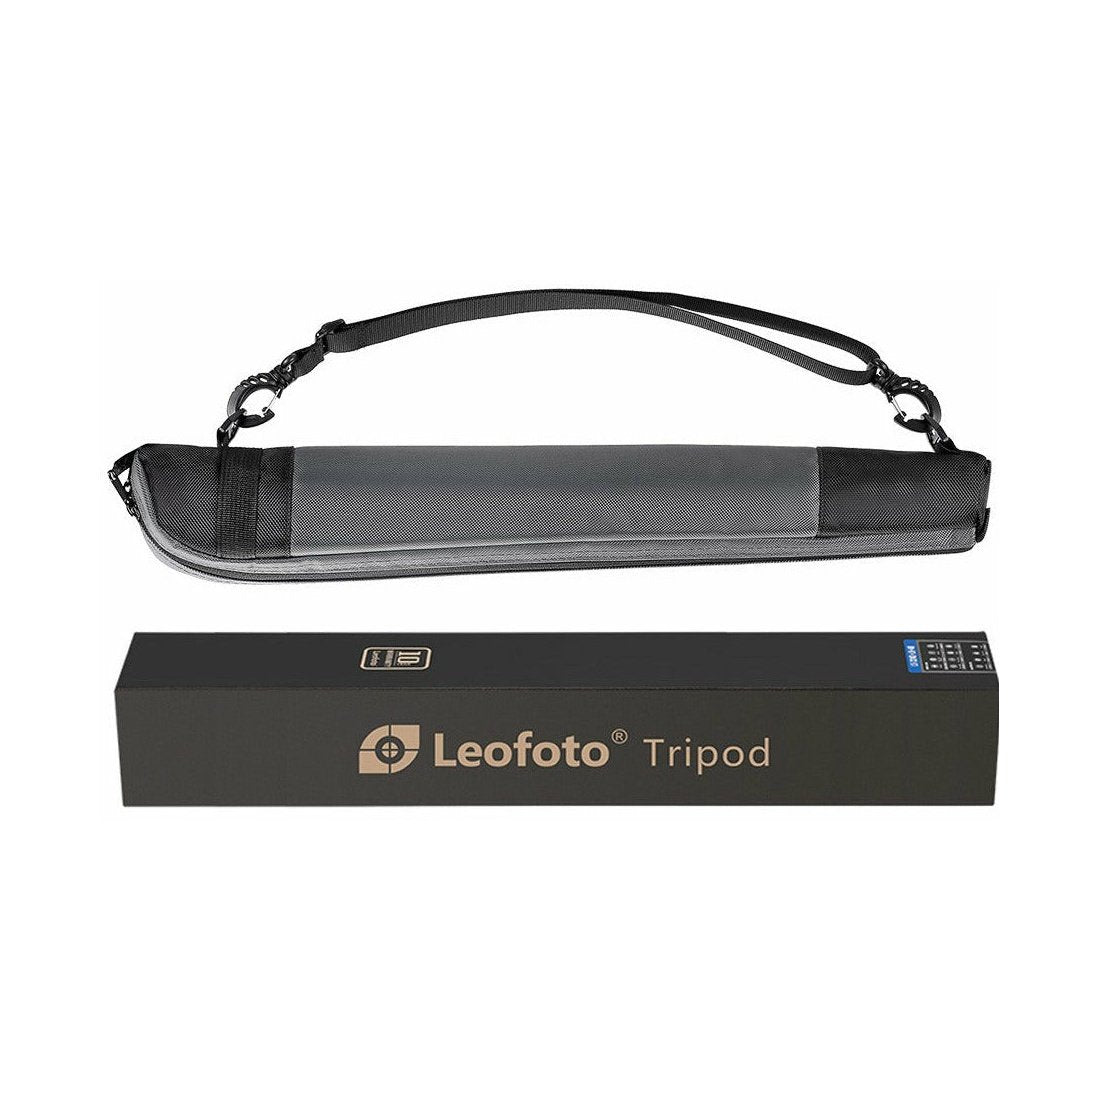 Leofoto MP-364C 4-Section Carbon Fiber Monopod leofoto-india